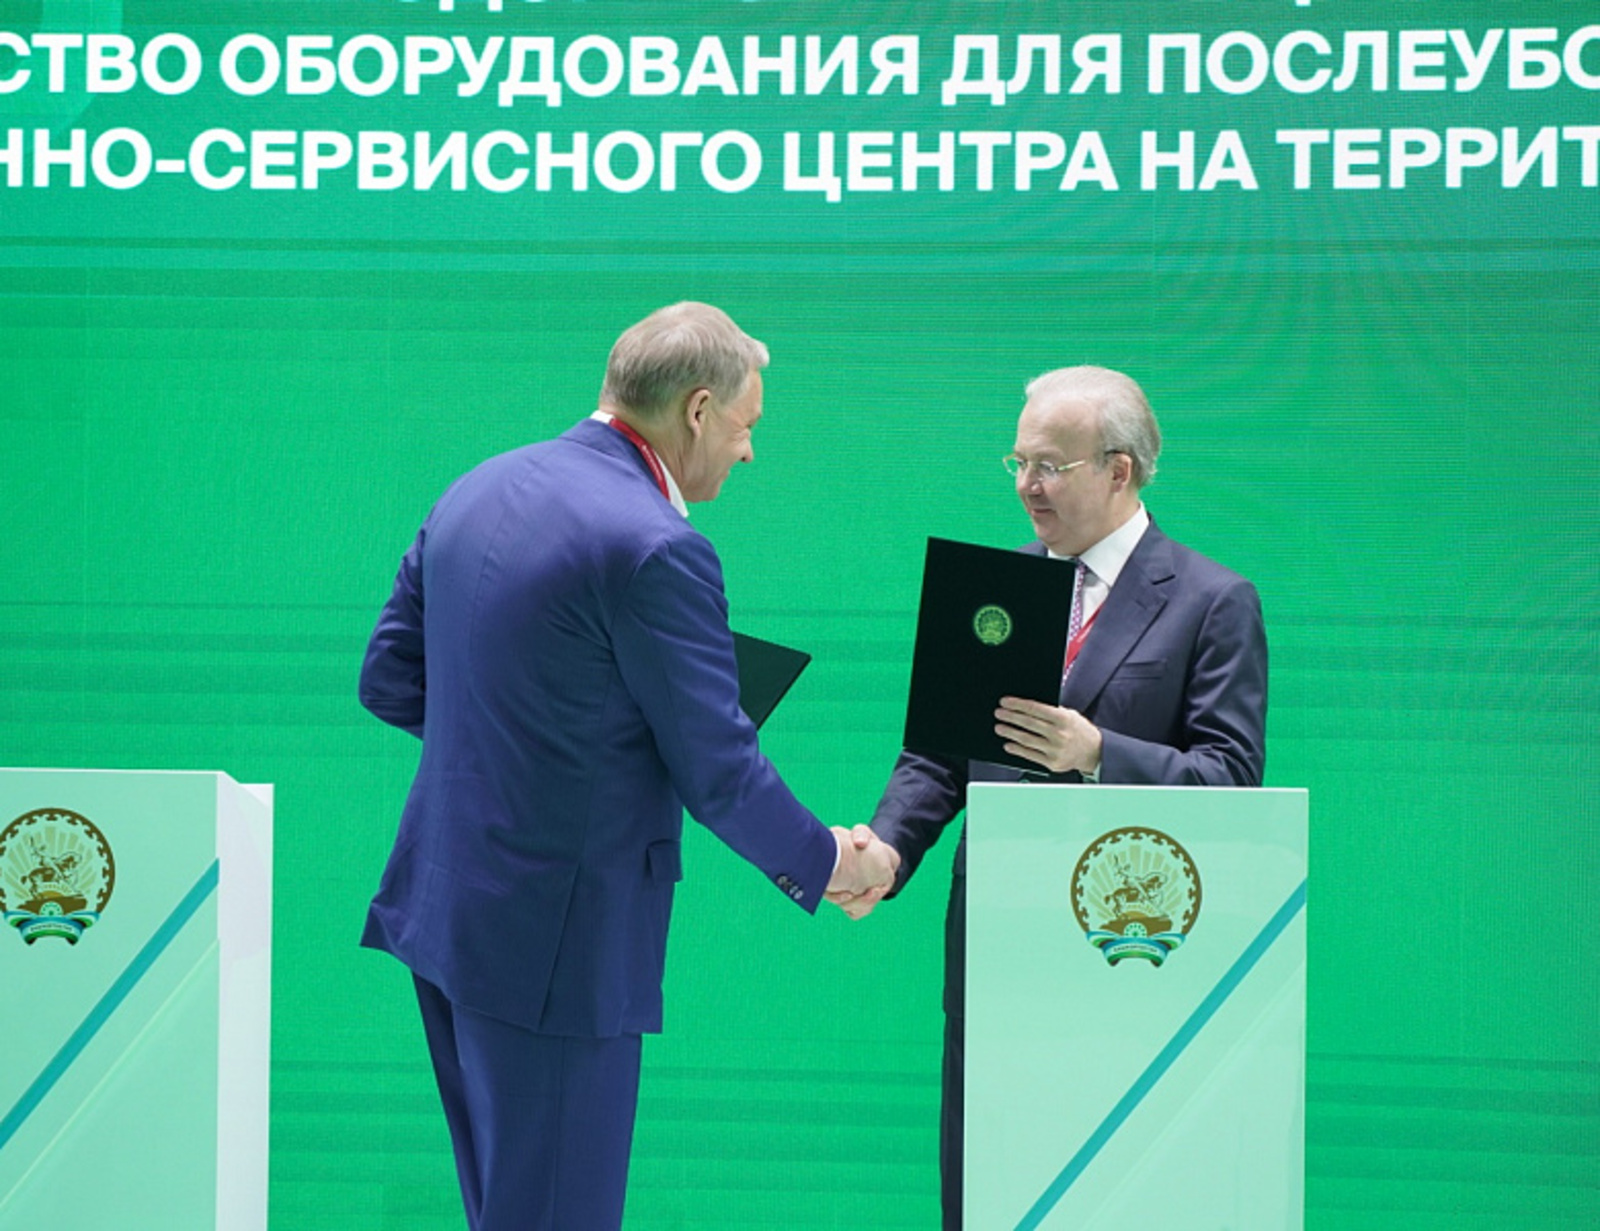 Премьер-министр Башкирии: «Амкодор» сильный партнер и мы заинтересованы в долгосрочном сотрудничестве с ним